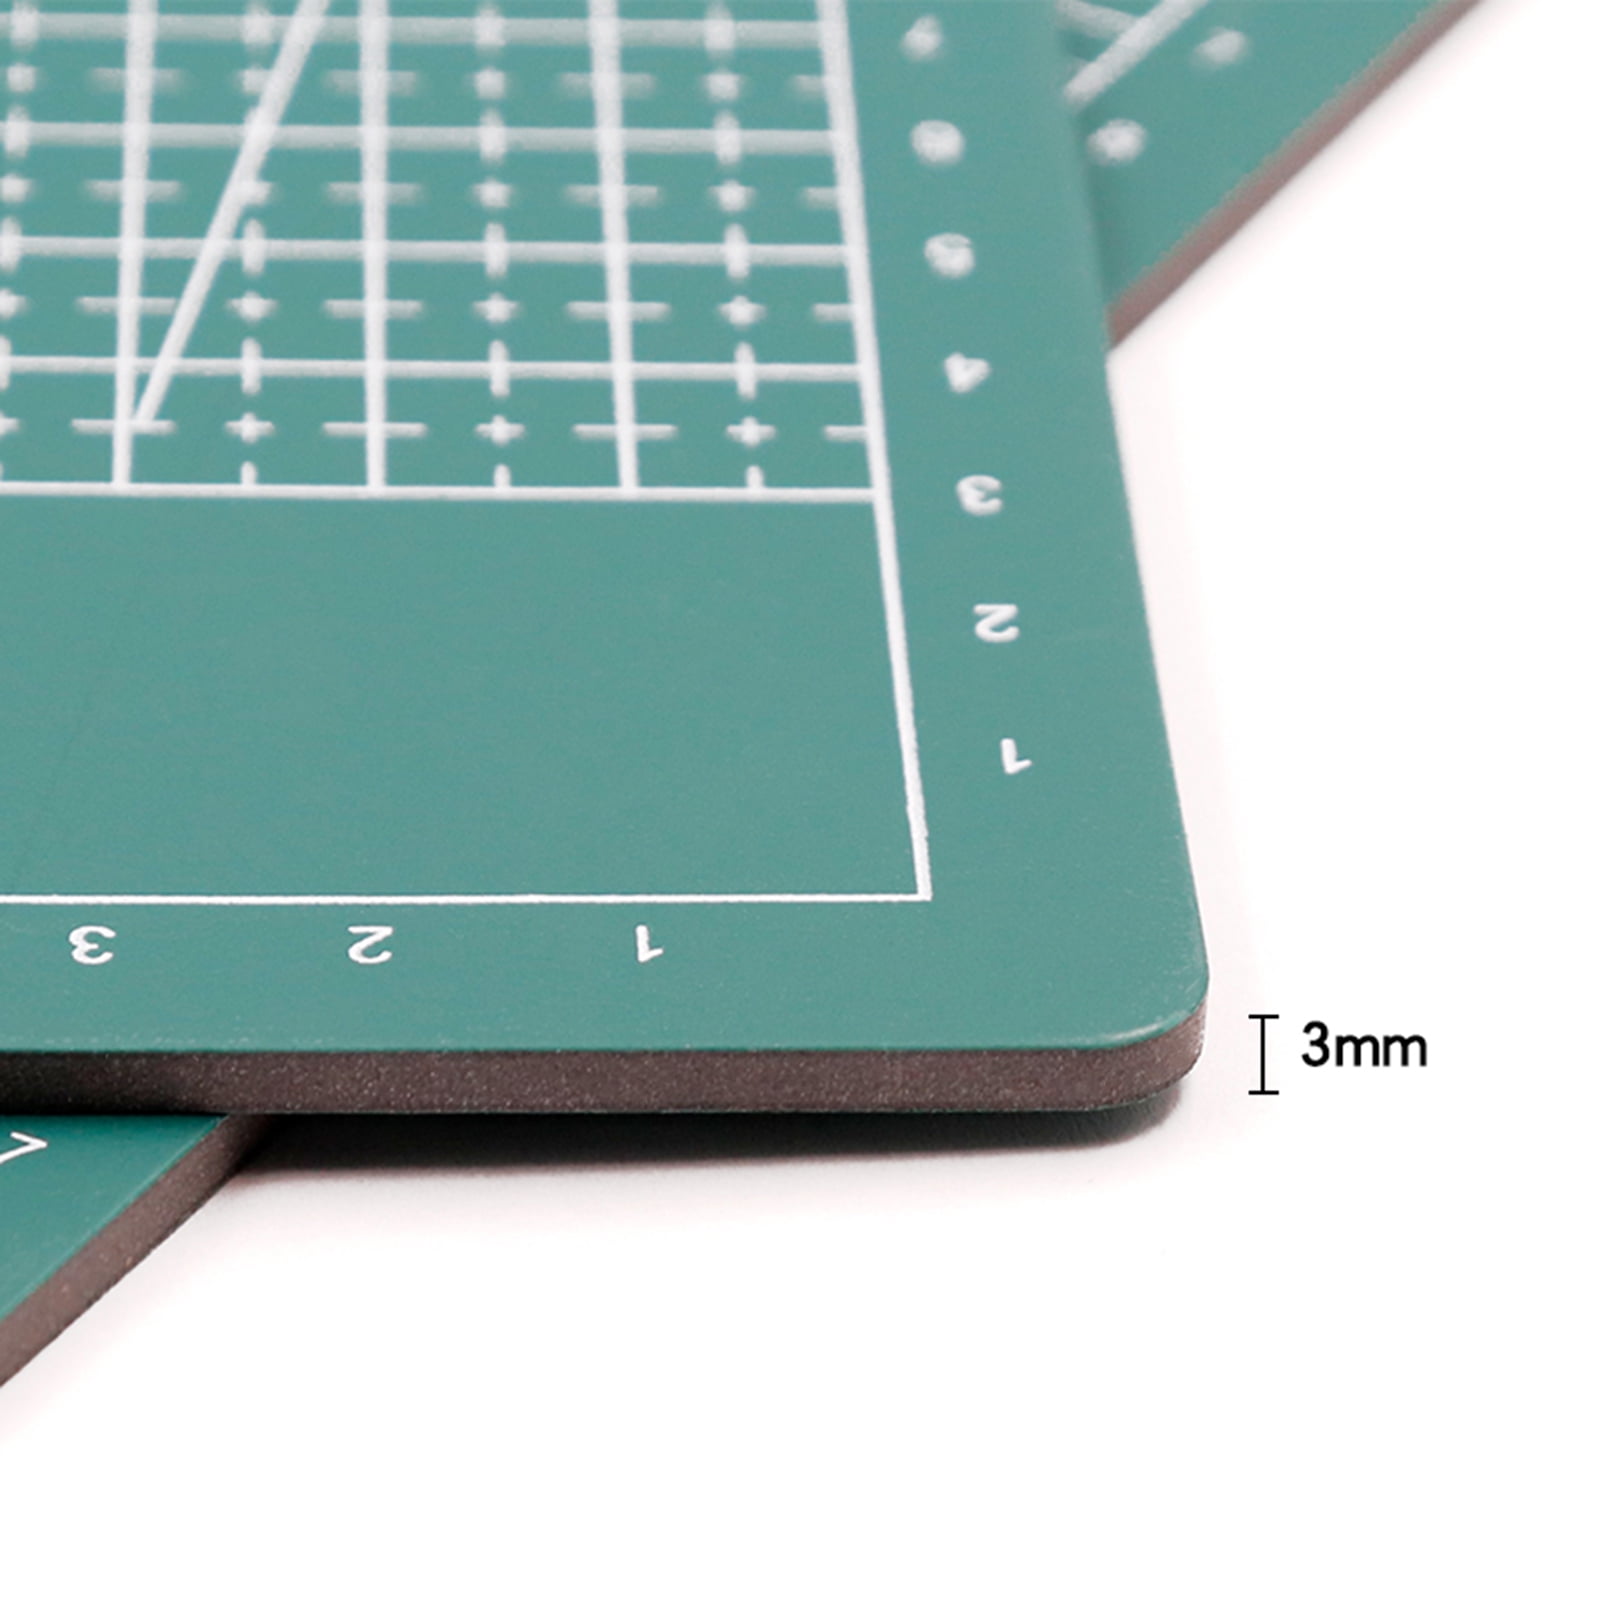 A4 Cutting Mat Cutting Board Factory Three layer Self - Temu